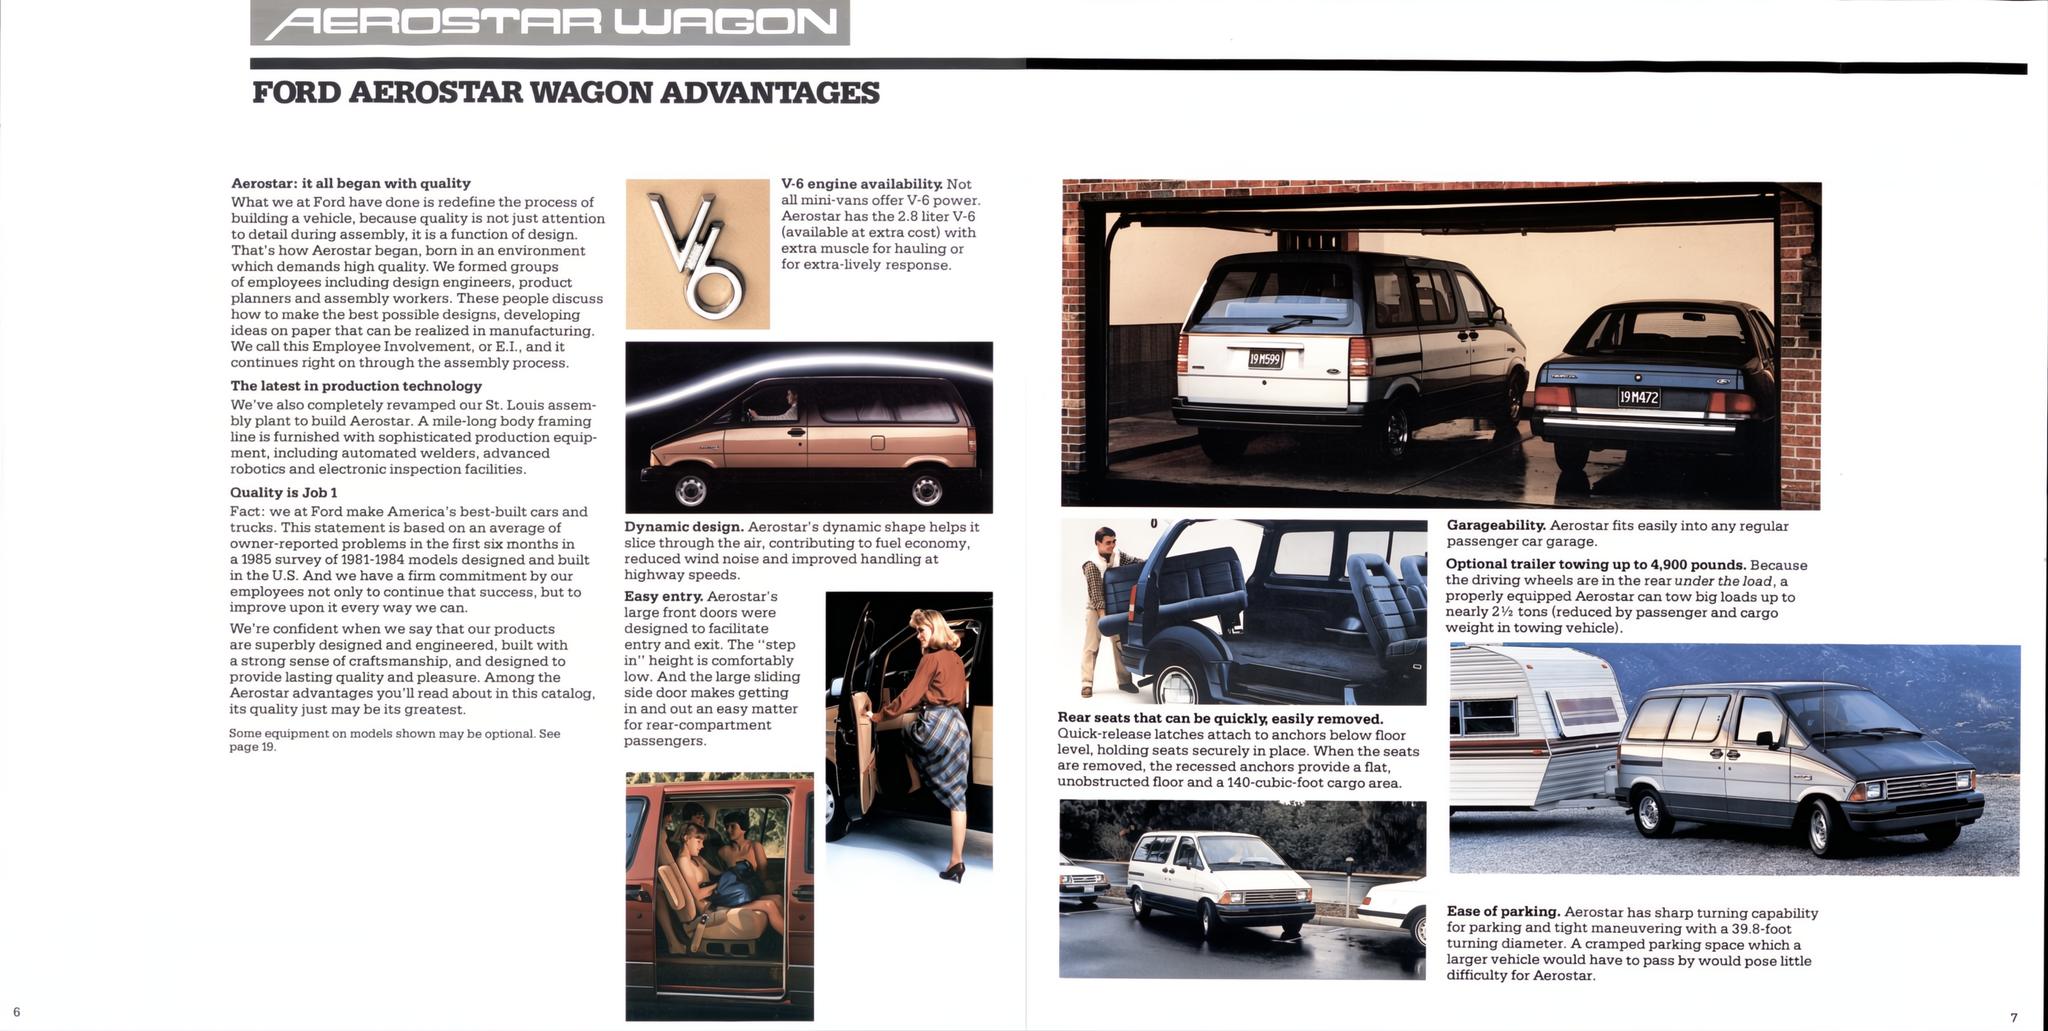 1986 Ford Aerostar Wagon Brochure 06-07